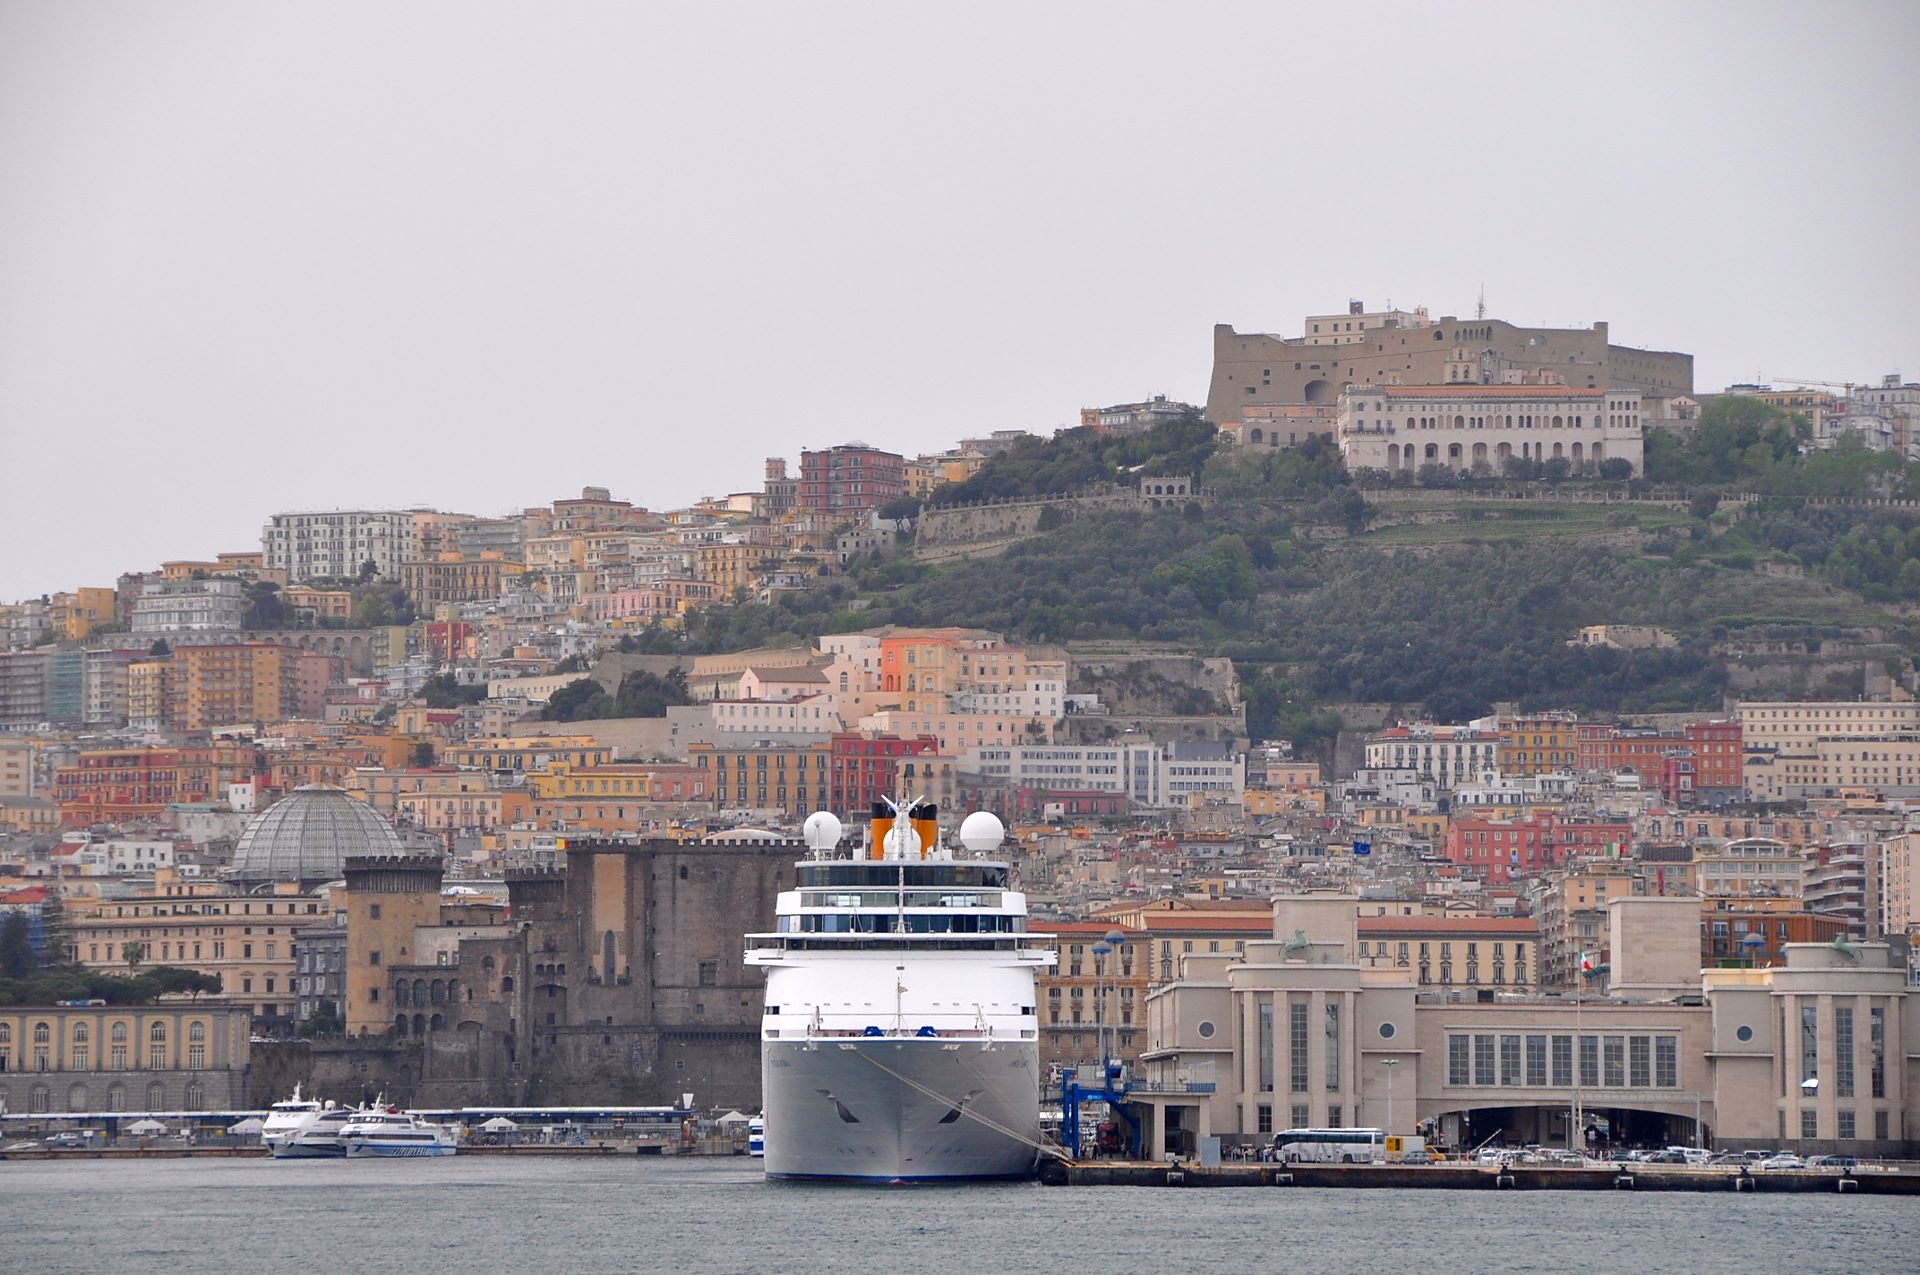 Hafen von Neapel mit Castello Nuovo, darüber Castel Sant’Elmo